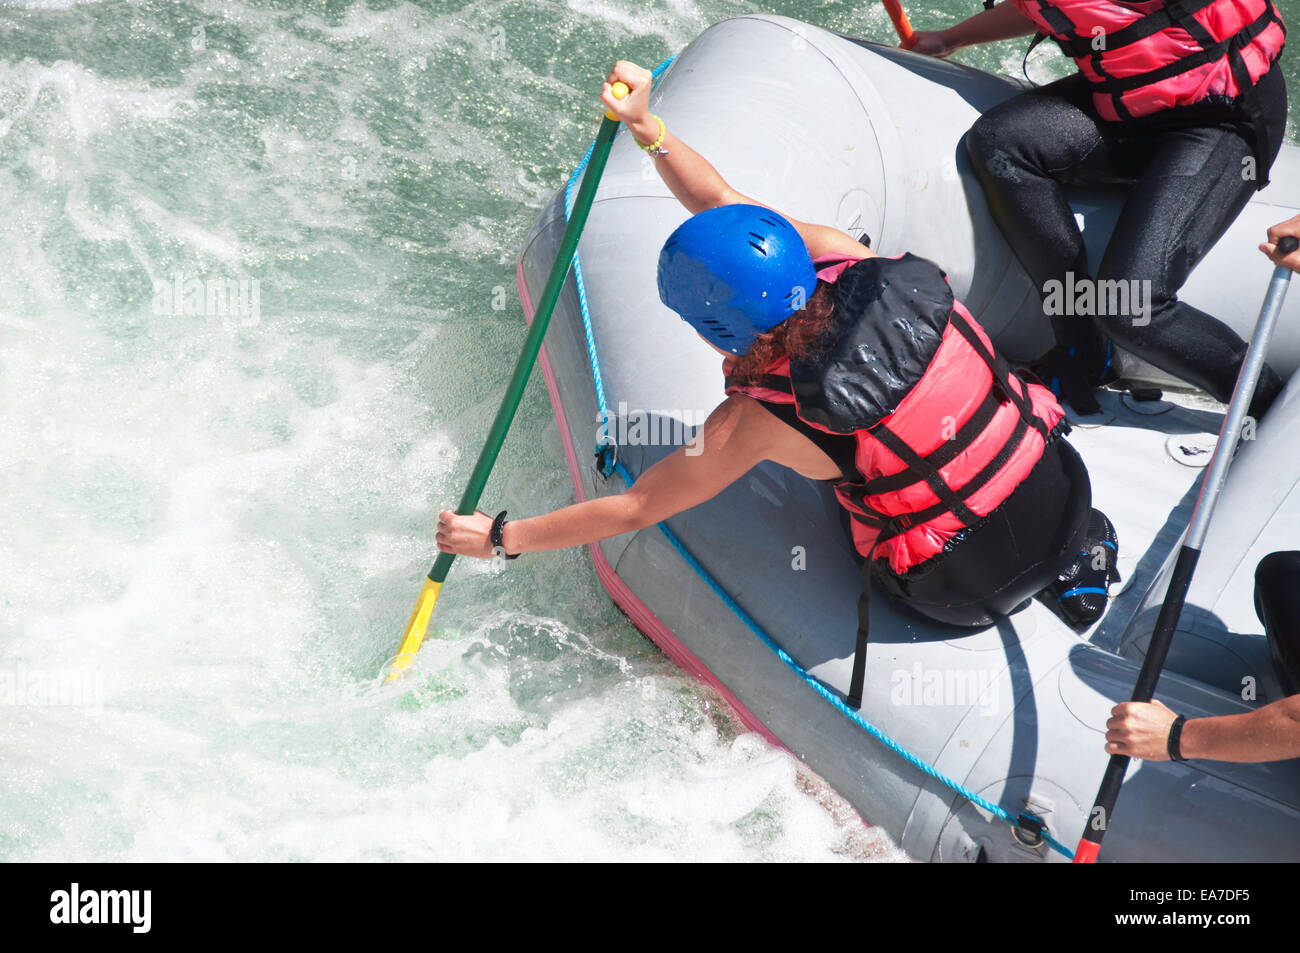 Rafting como deporte y diversión extrema Foto de stock